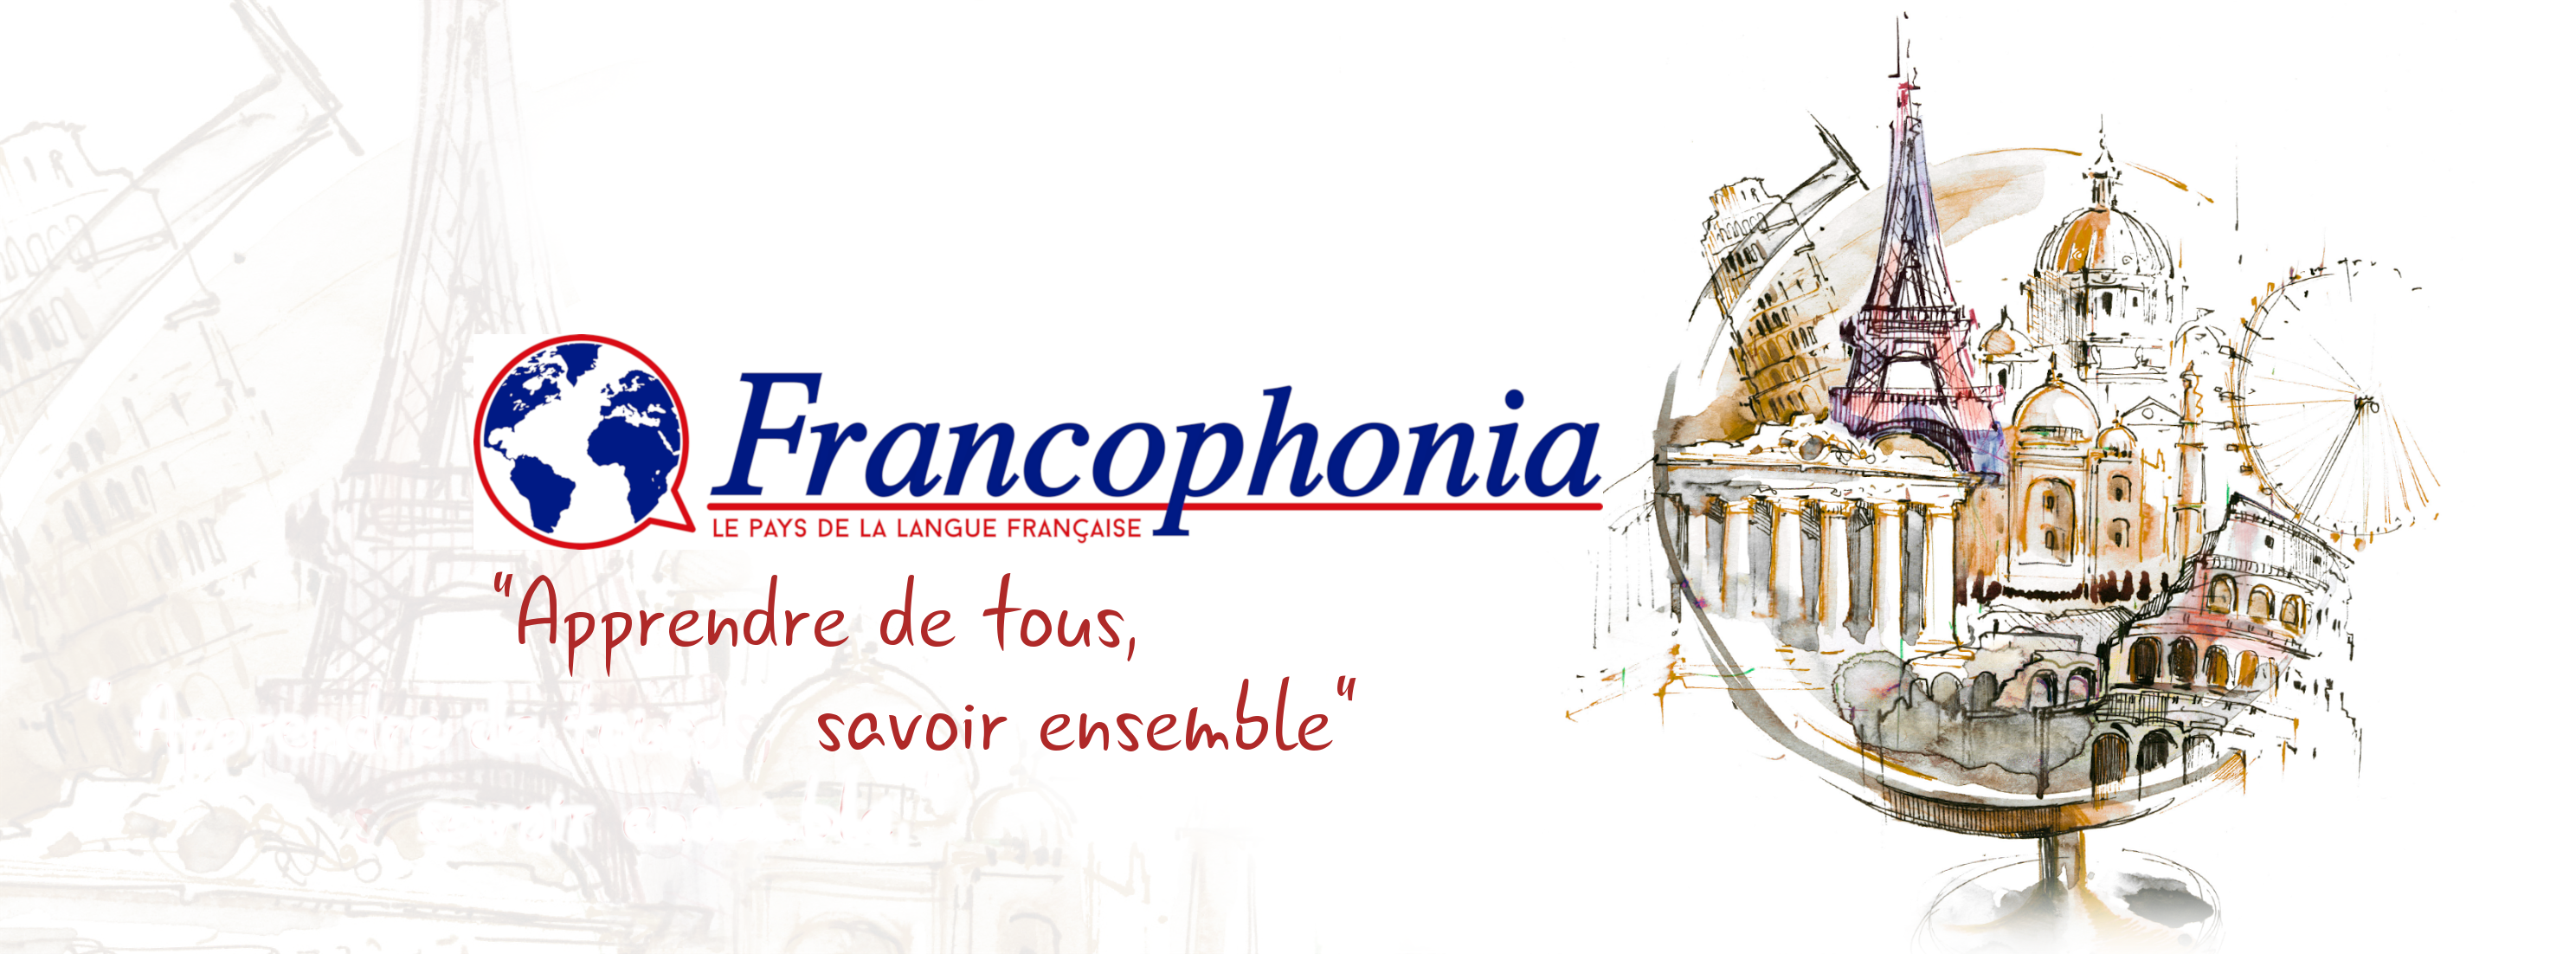 Francophonia